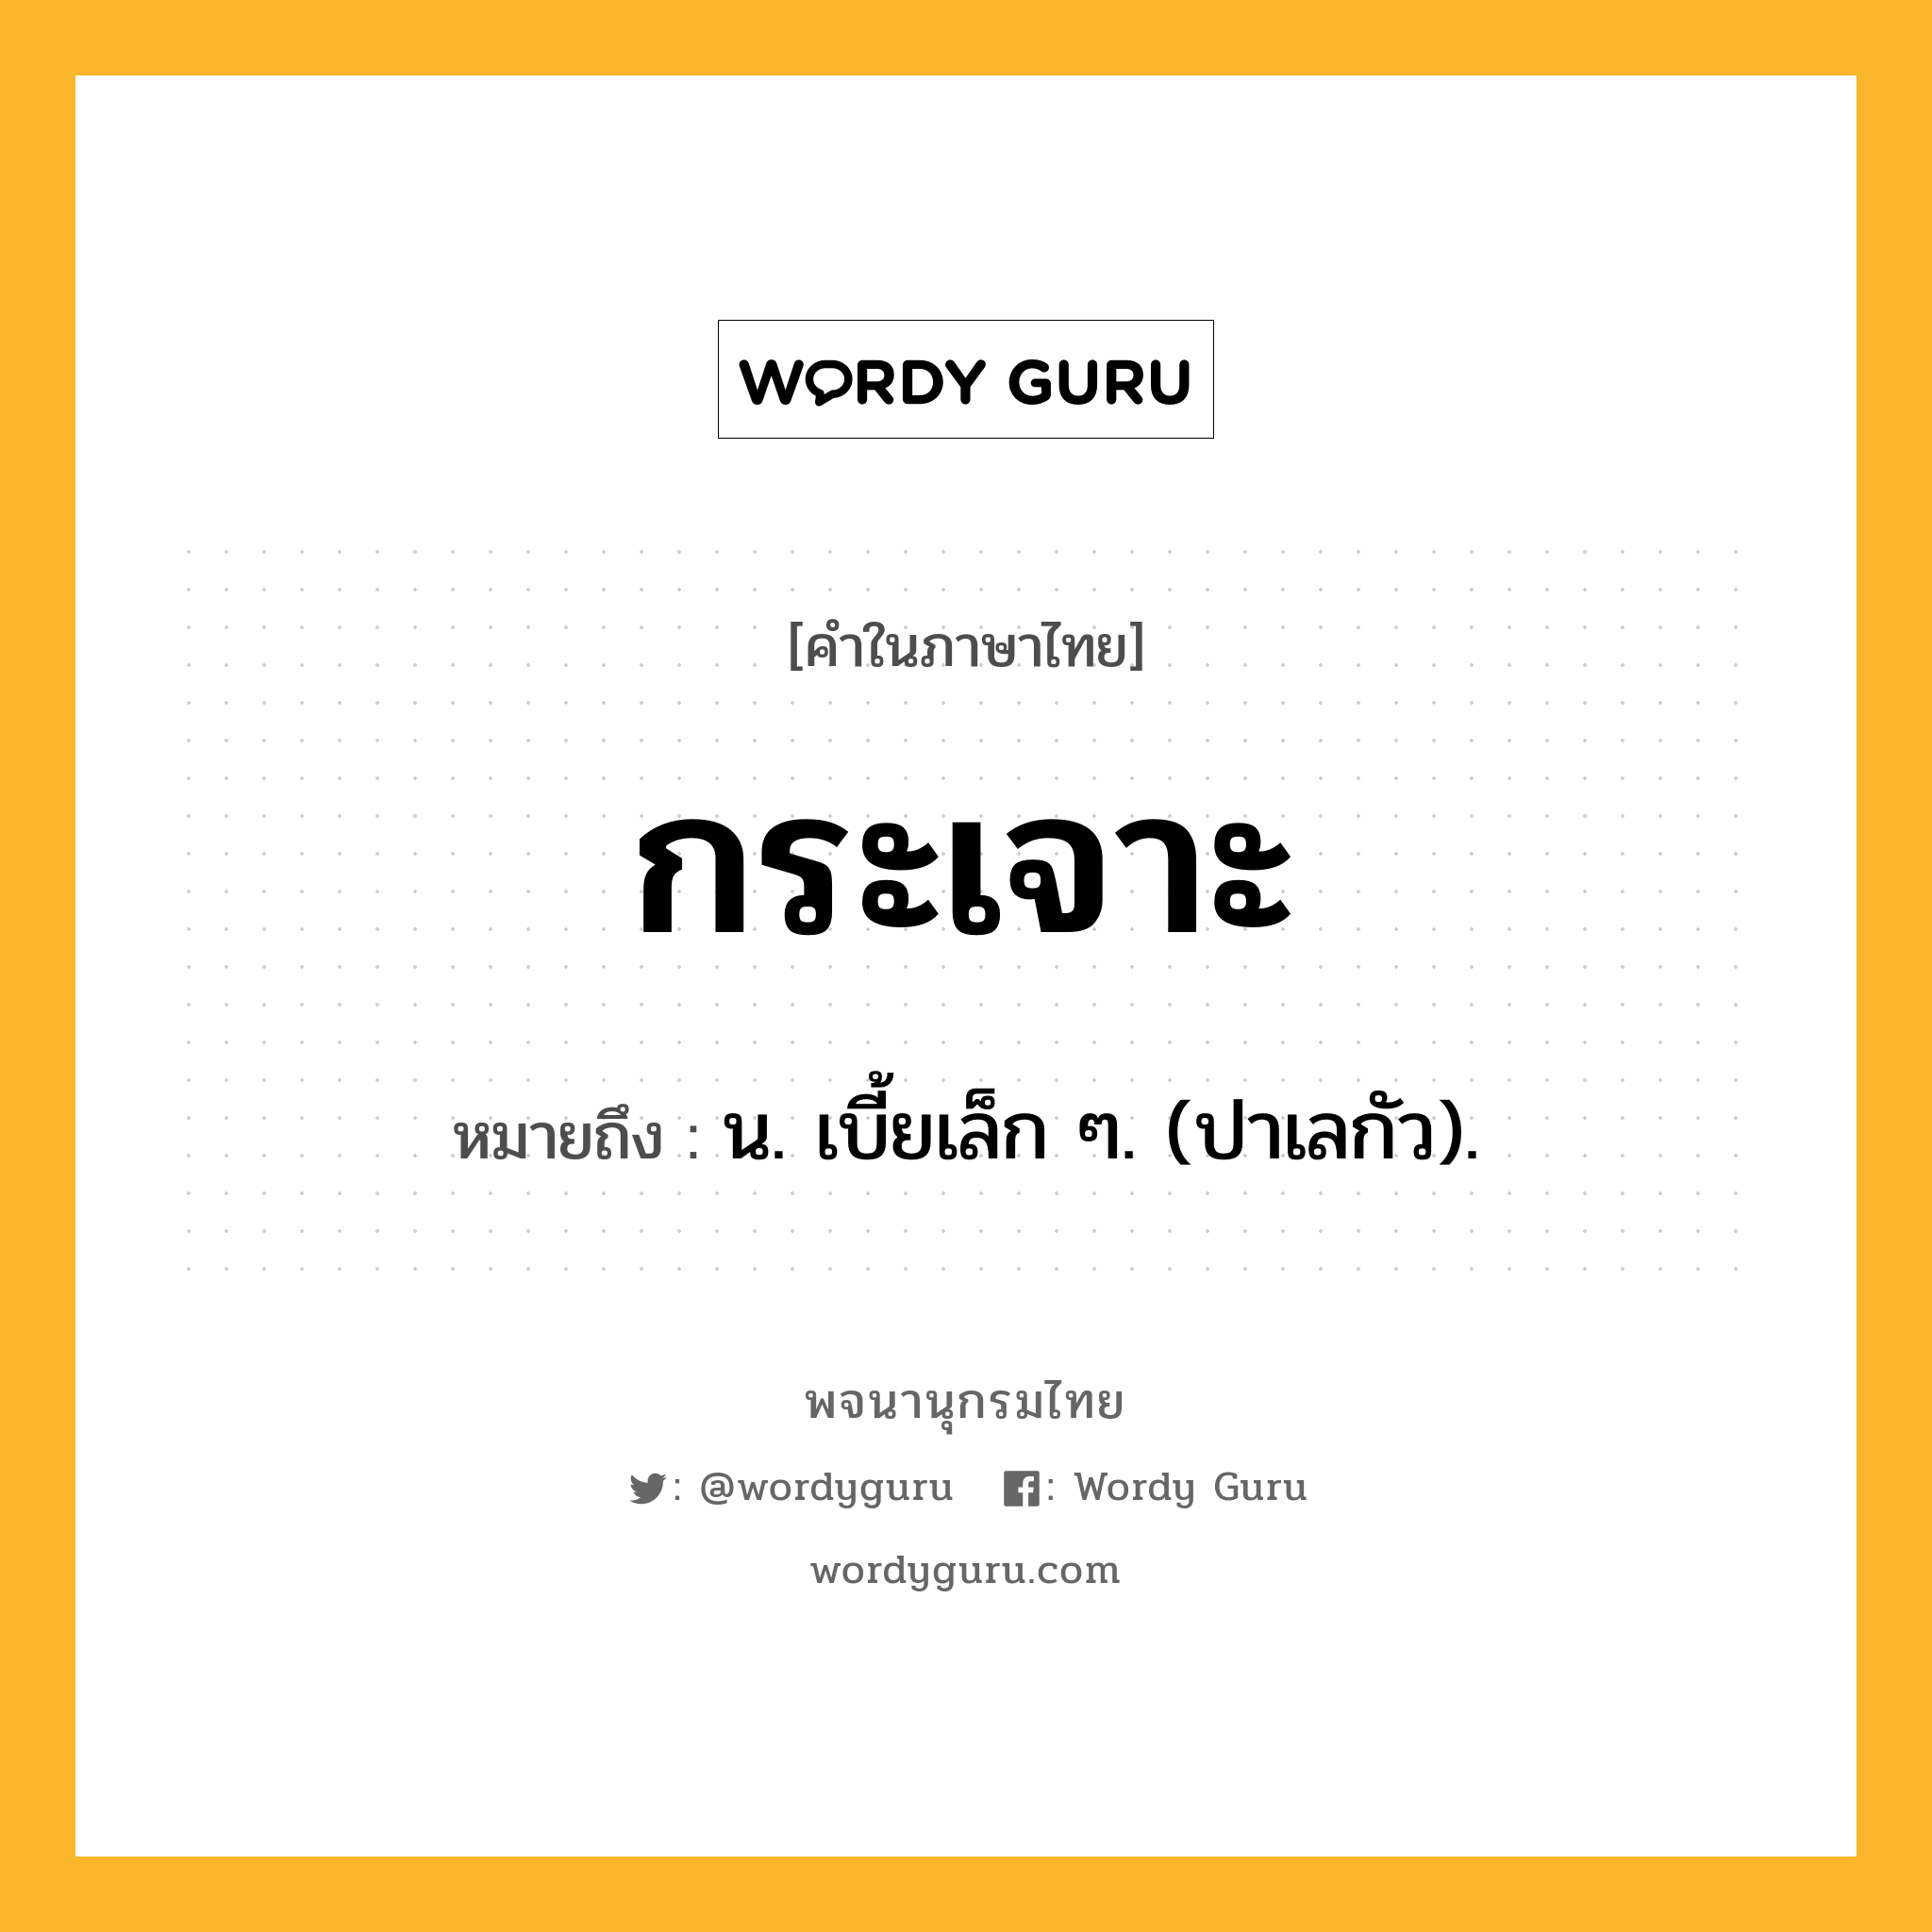 กระเจาะ หมายถึงอะไร?, คำในภาษาไทย กระเจาะ หมายถึง น. เบี้ยเล็ก ๆ. (ปาเลกัว).